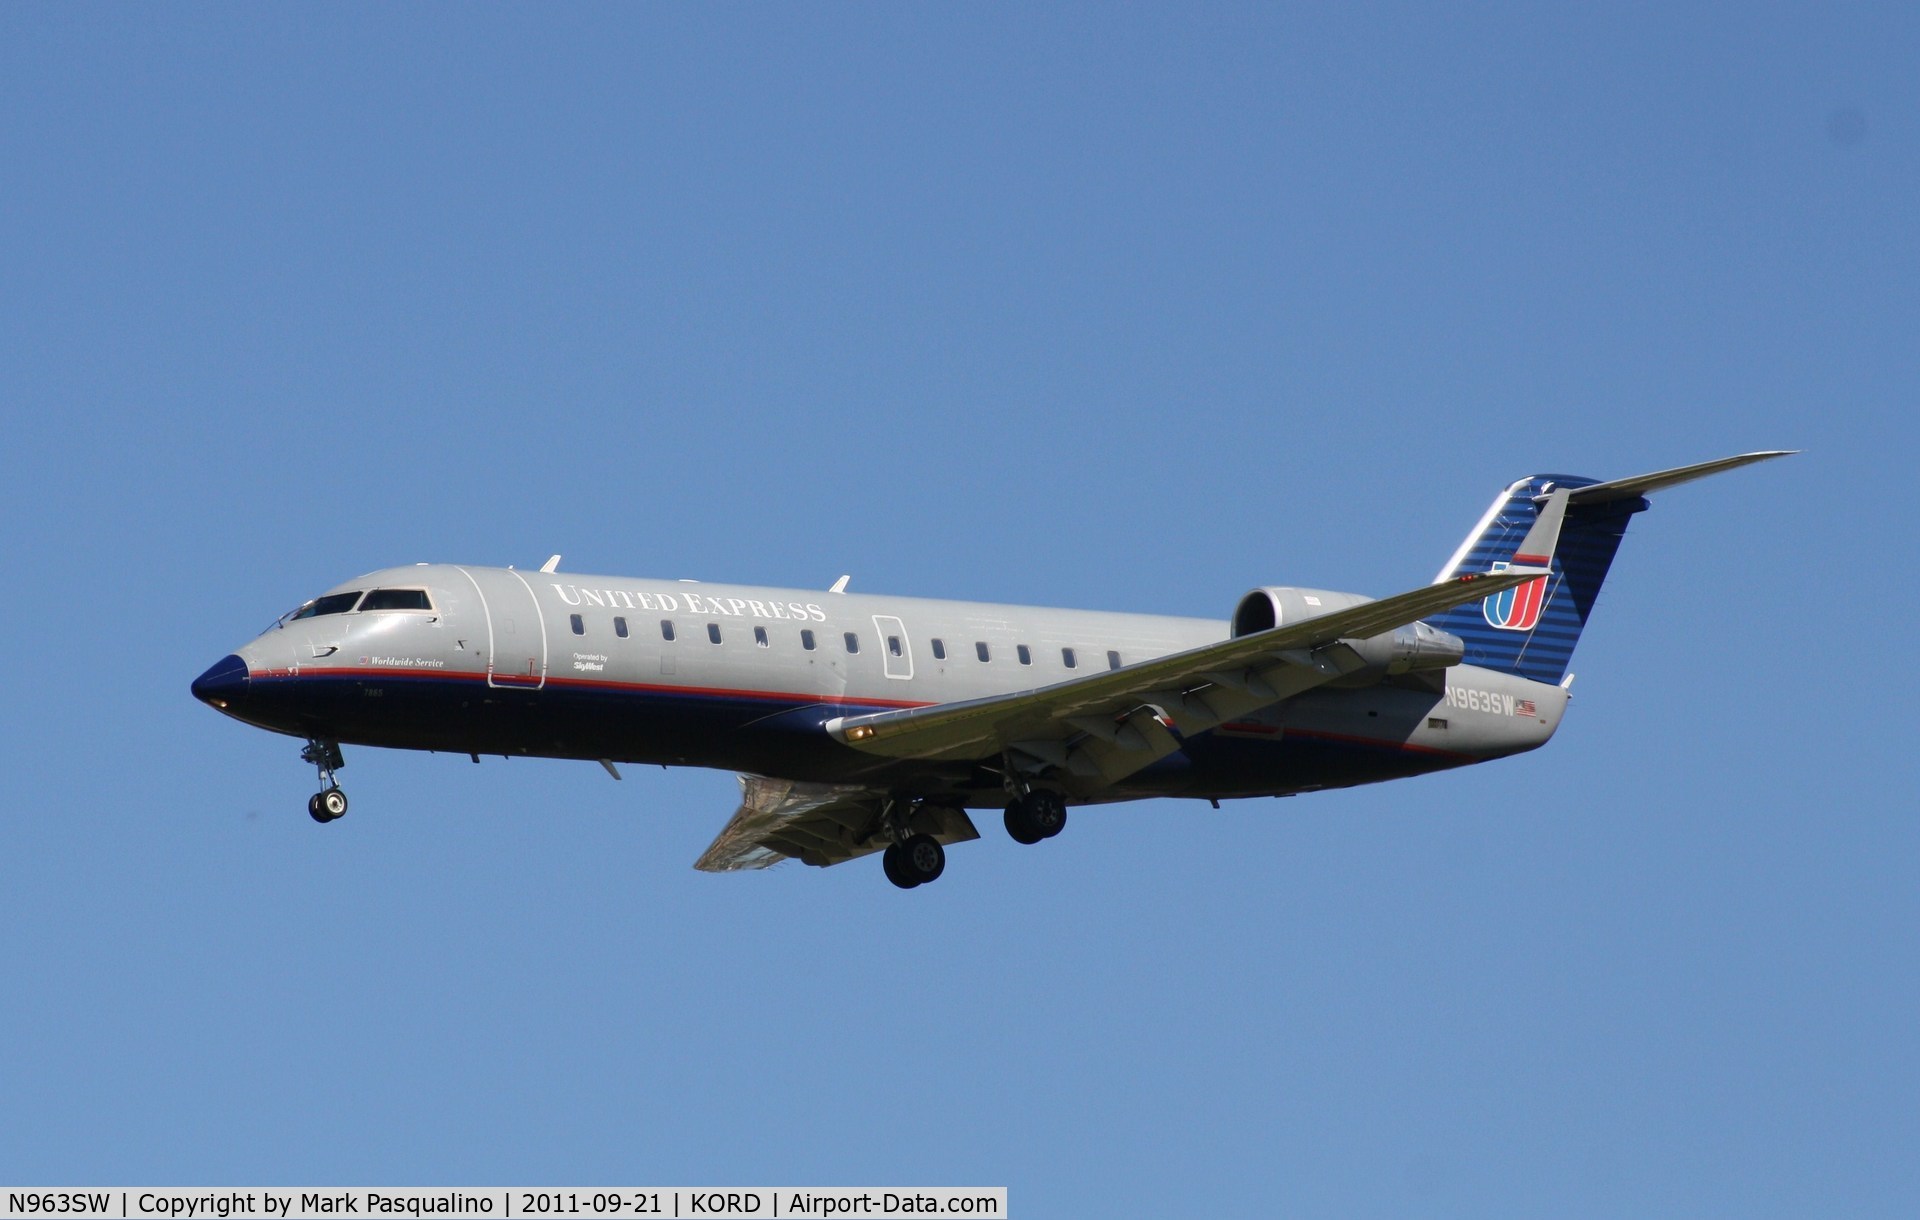 N963SW, 2003 Bombardier CRJ-200LR (CL-600-2B19) C/N 7865, CL-600-2B19